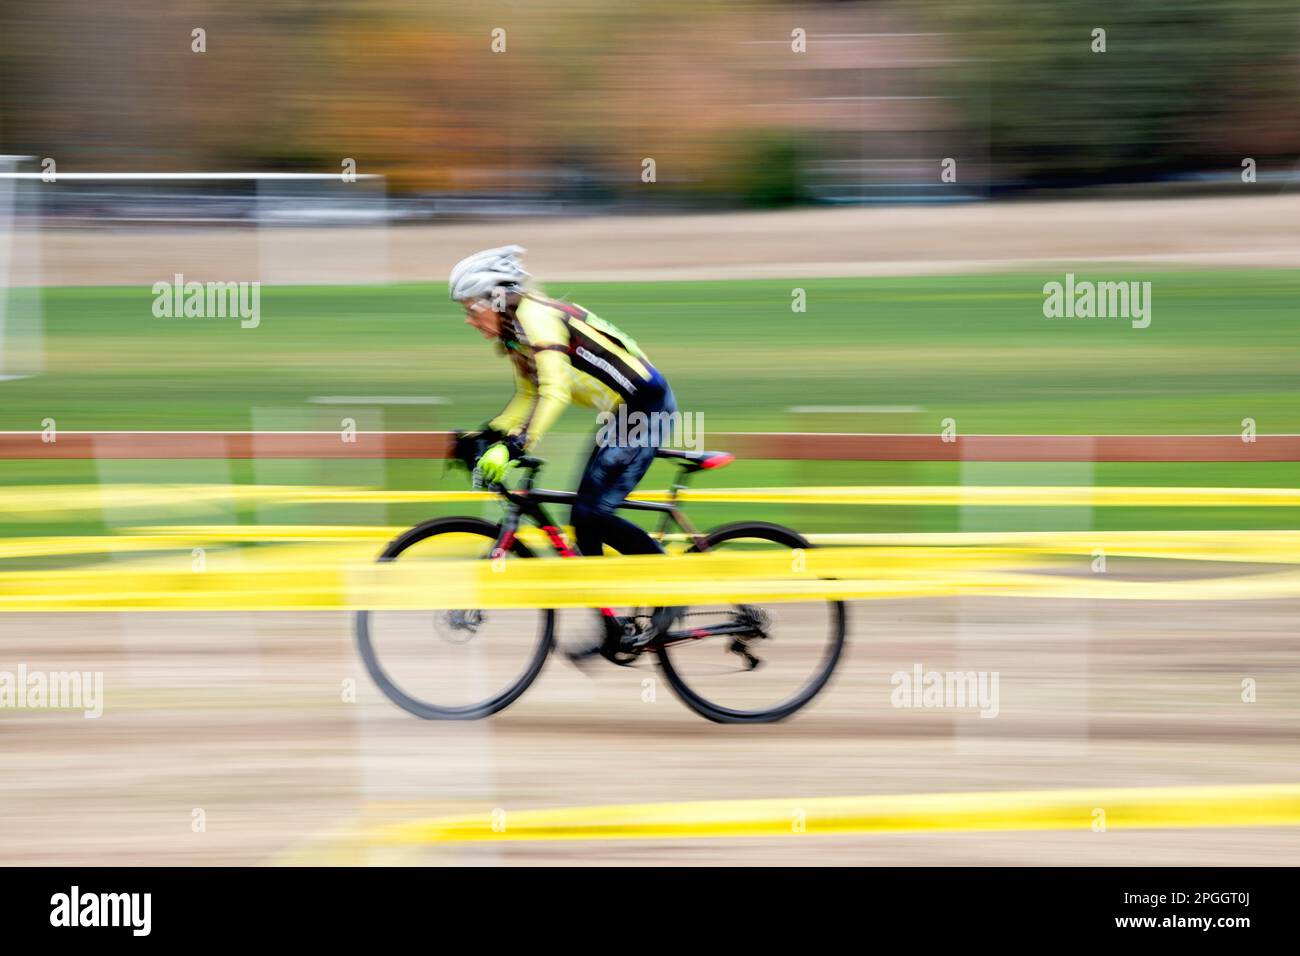 WA24068-00....Washington - Seniorenbürgerin Vicky Spring (69) nimmt an einem Cyclocross-Rennen in West-Washington Teil. Vicky in Gelb. Stockfoto